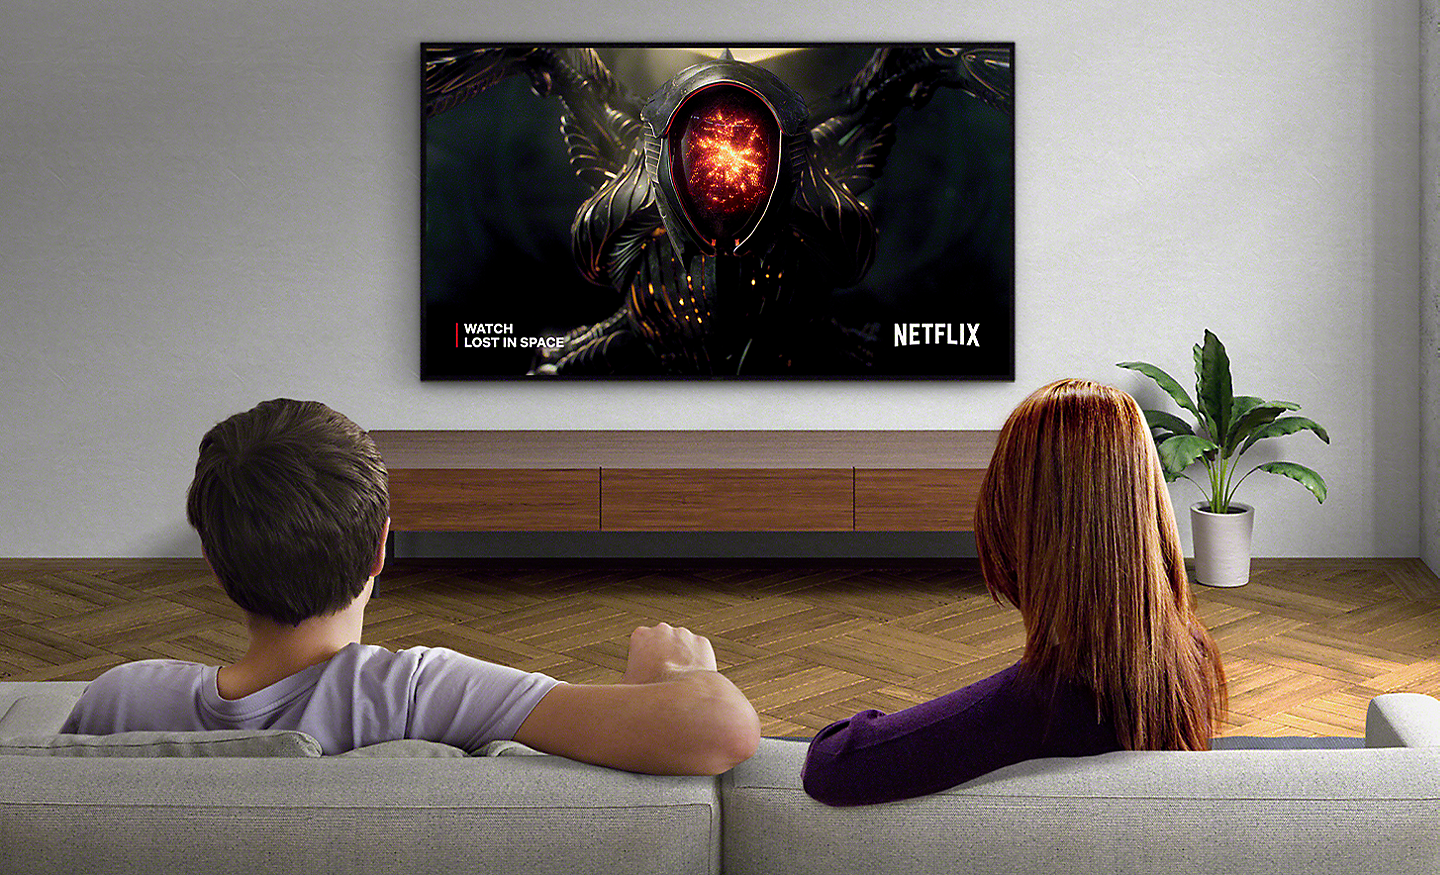 Afbeelding van een stel dat in een woonkamer Netflix kijkt op een BRAVIA-tv aan de wand